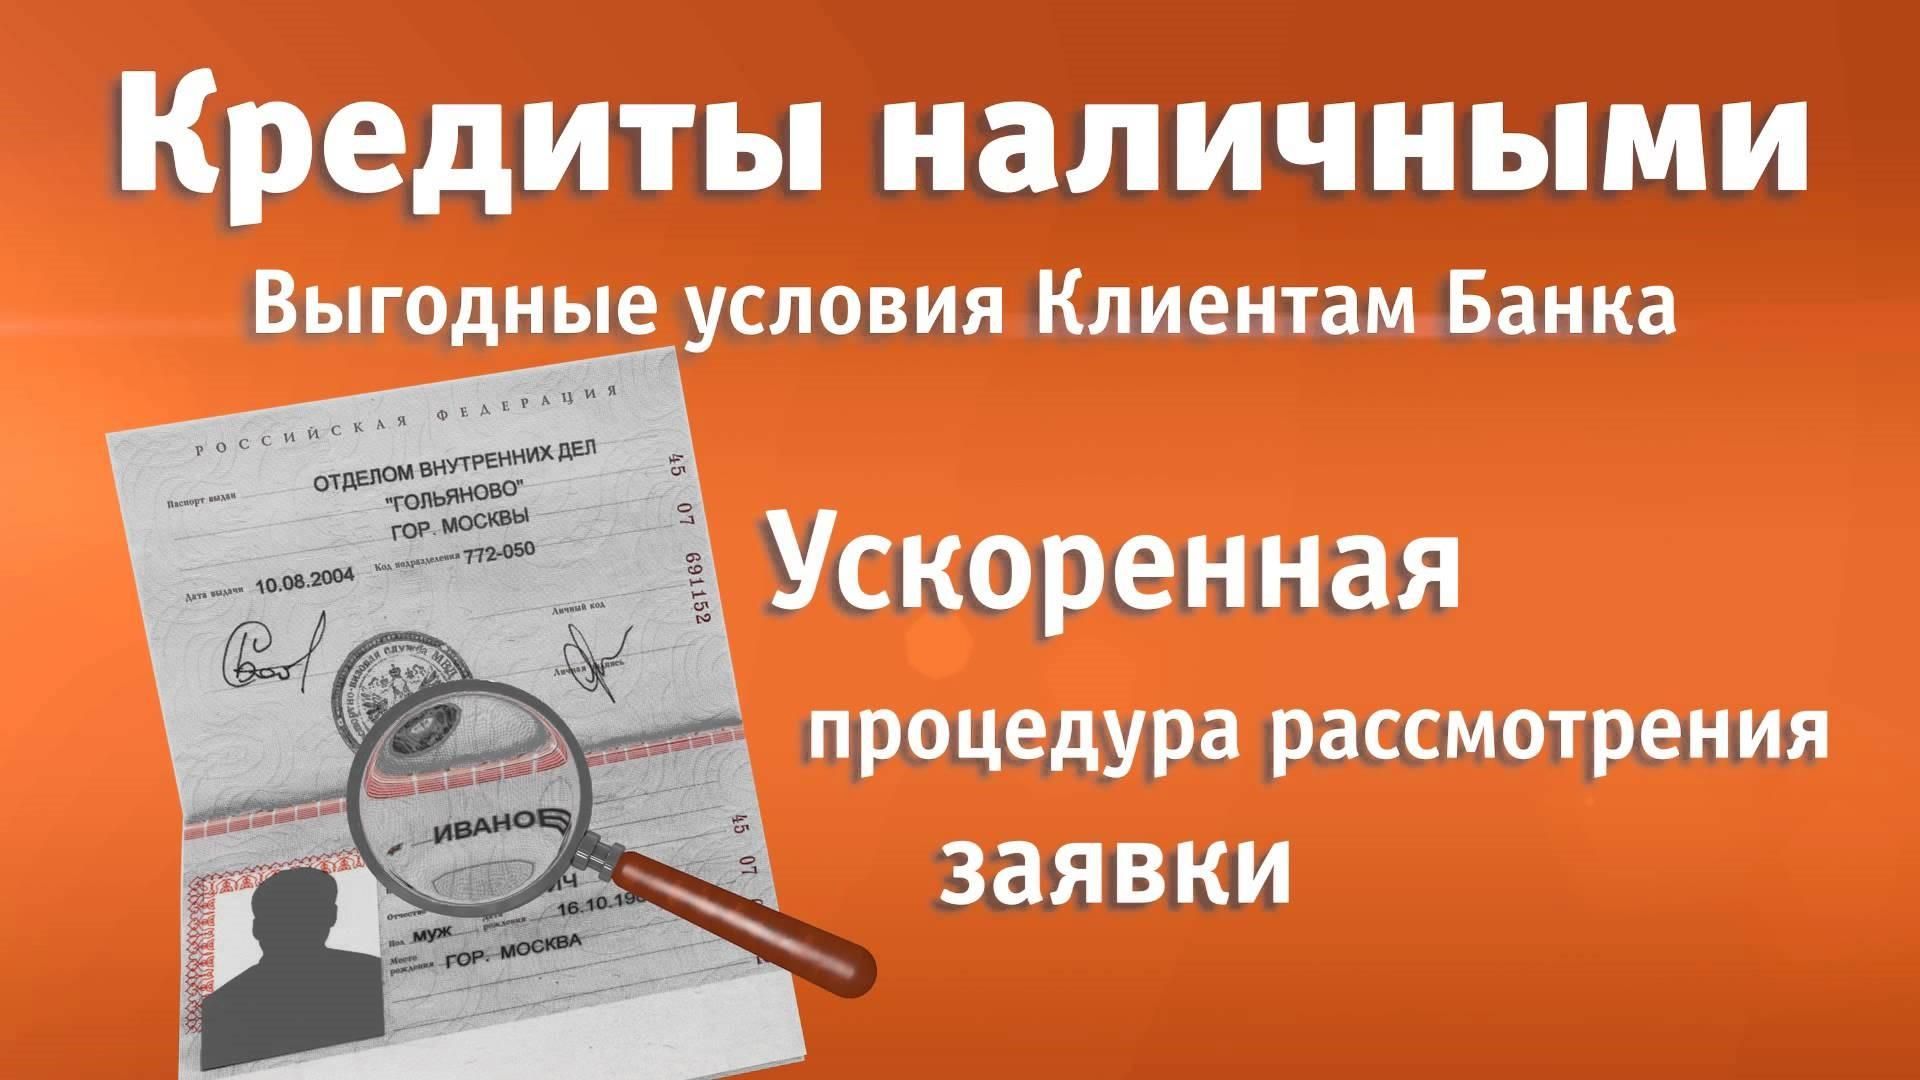 Займ наличными по паспорту в Подольске по паспорту